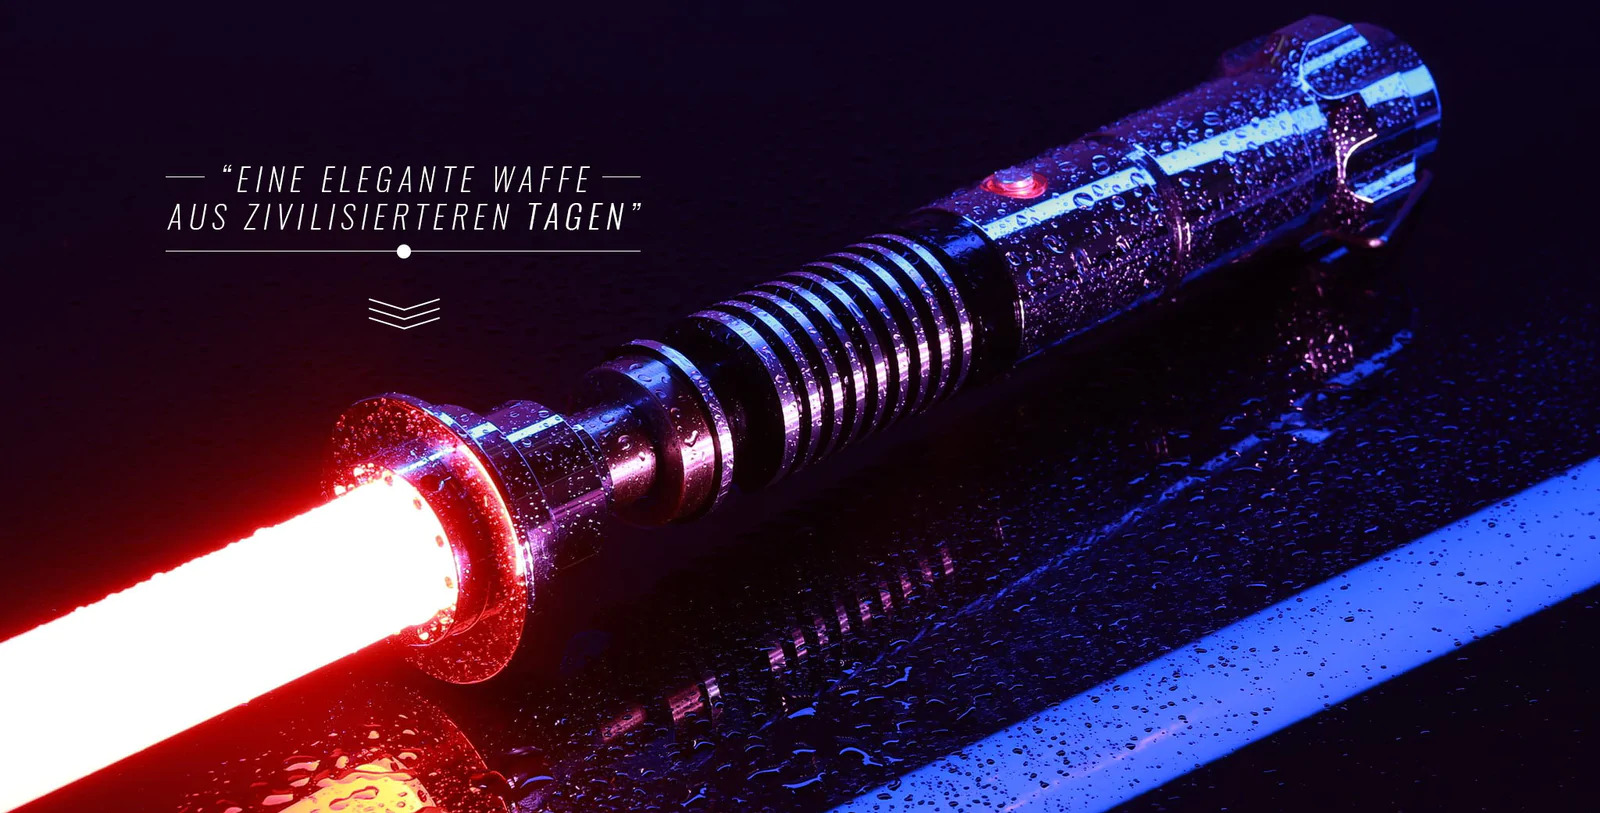 #Lieblingswaffe von Starwars: Das Lichtschwert